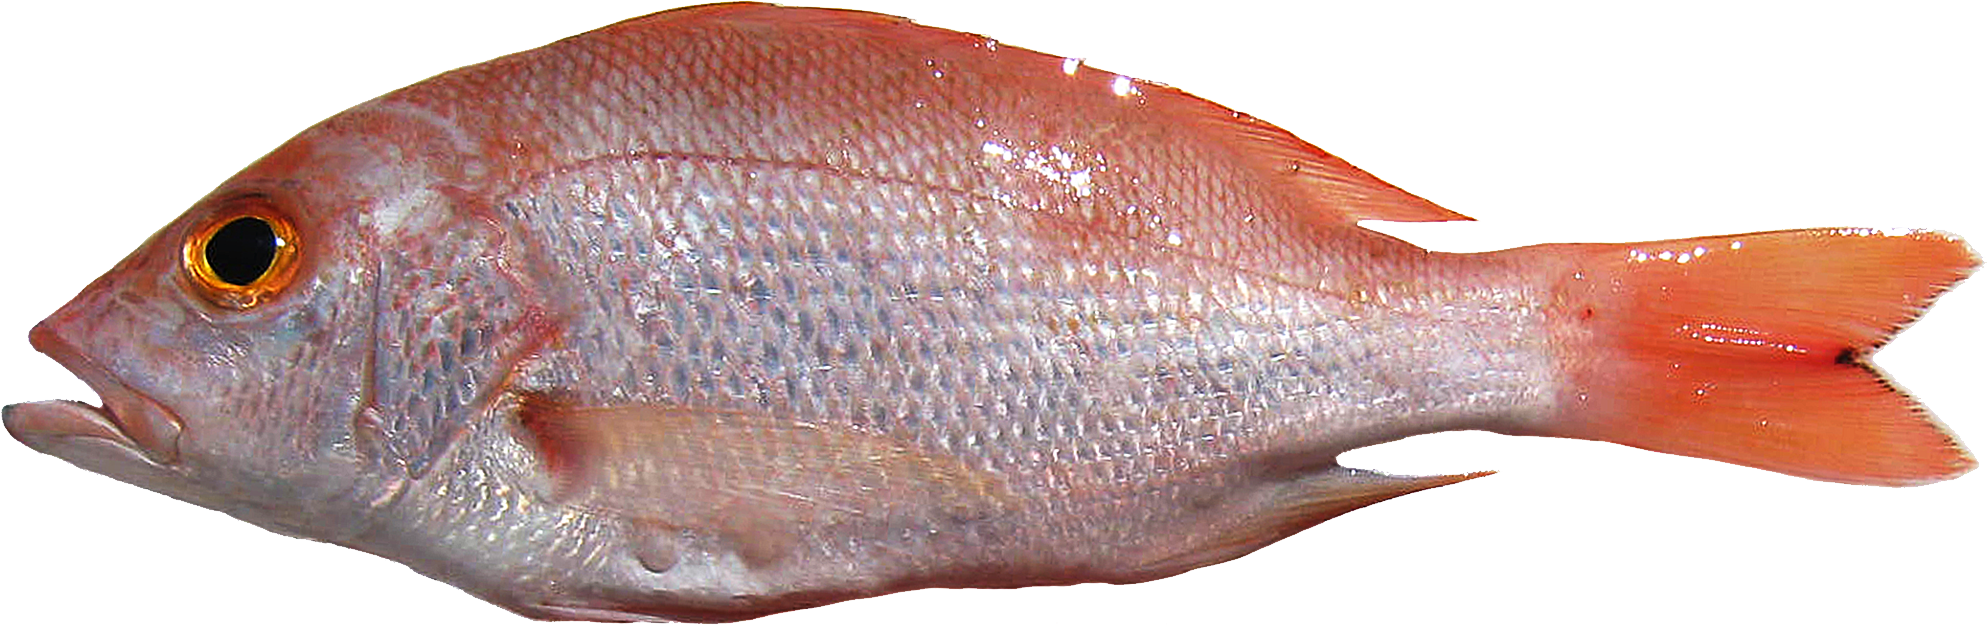 Ikan